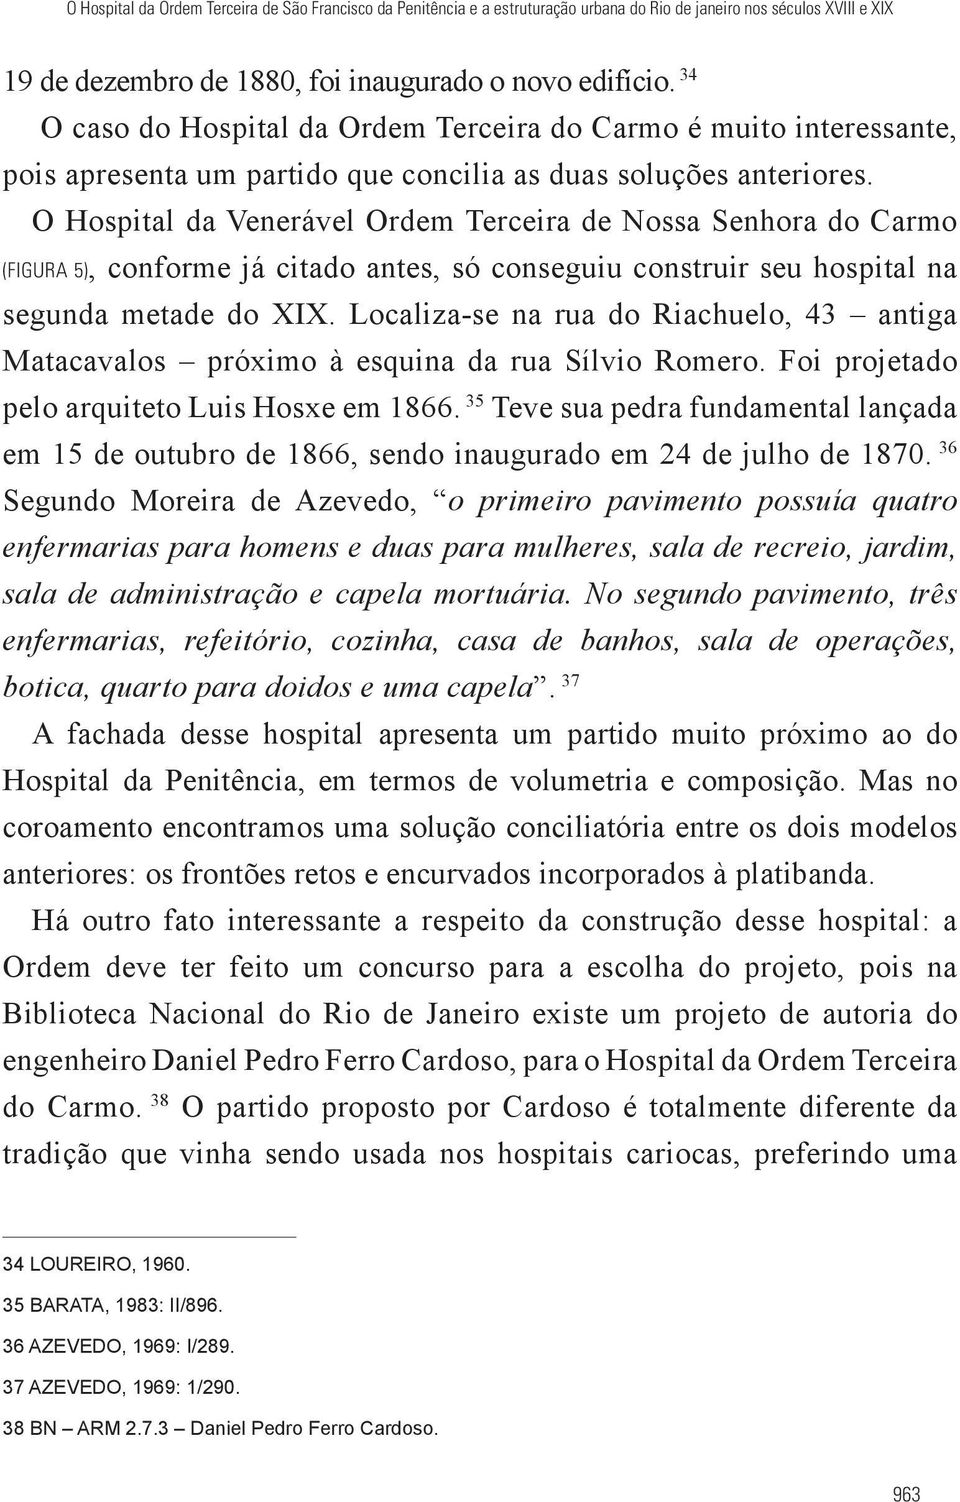 O Hospital da Venerável Ordem Terceira de Nossa Senhora do Carmo (FIGURA 5), conforme já citado antes, só conseguiu construir seu hospital na segunda metade do XIX.